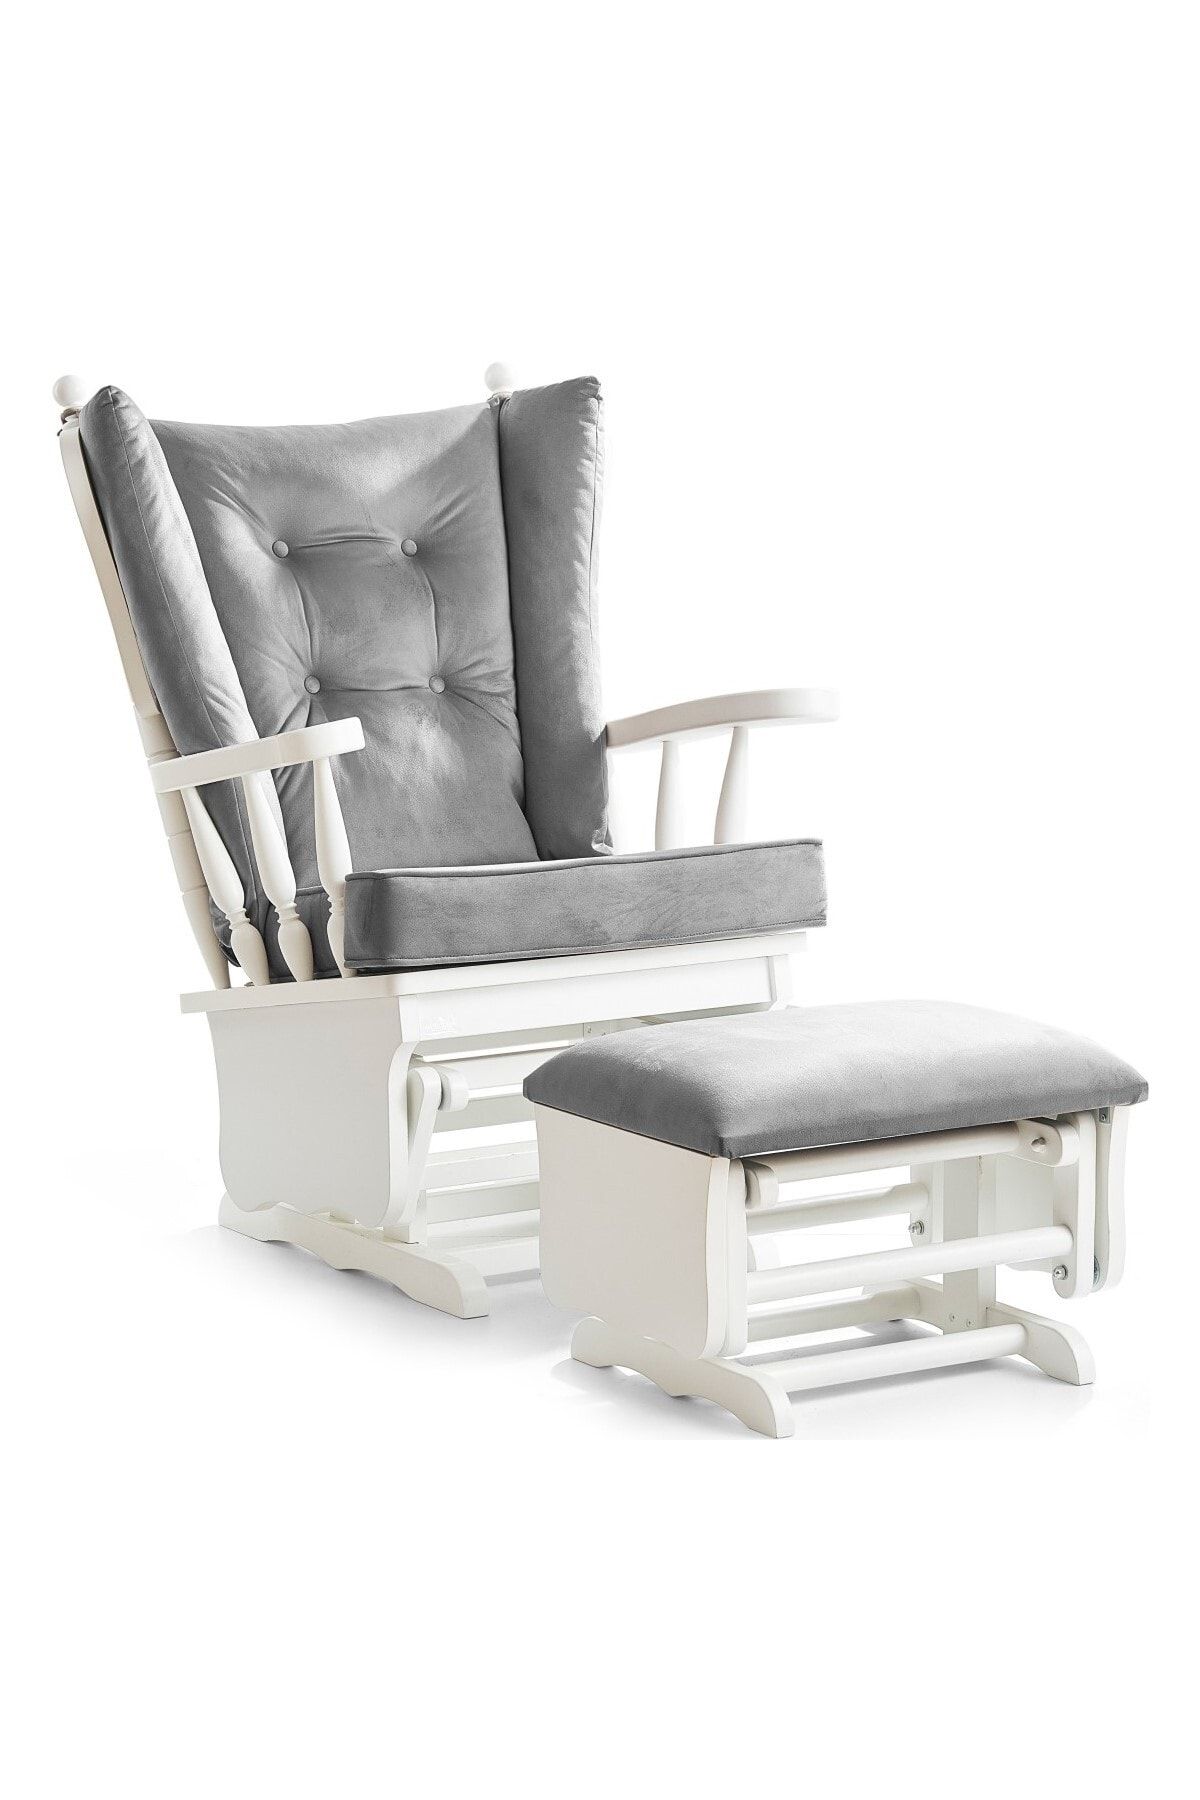 Meltem Smart Sallanır Emzirme Dinlenme Koltuğu Sallanan Sandalye Sallanan Koltuk Markiz (BEYAZ-GRİ (3040))